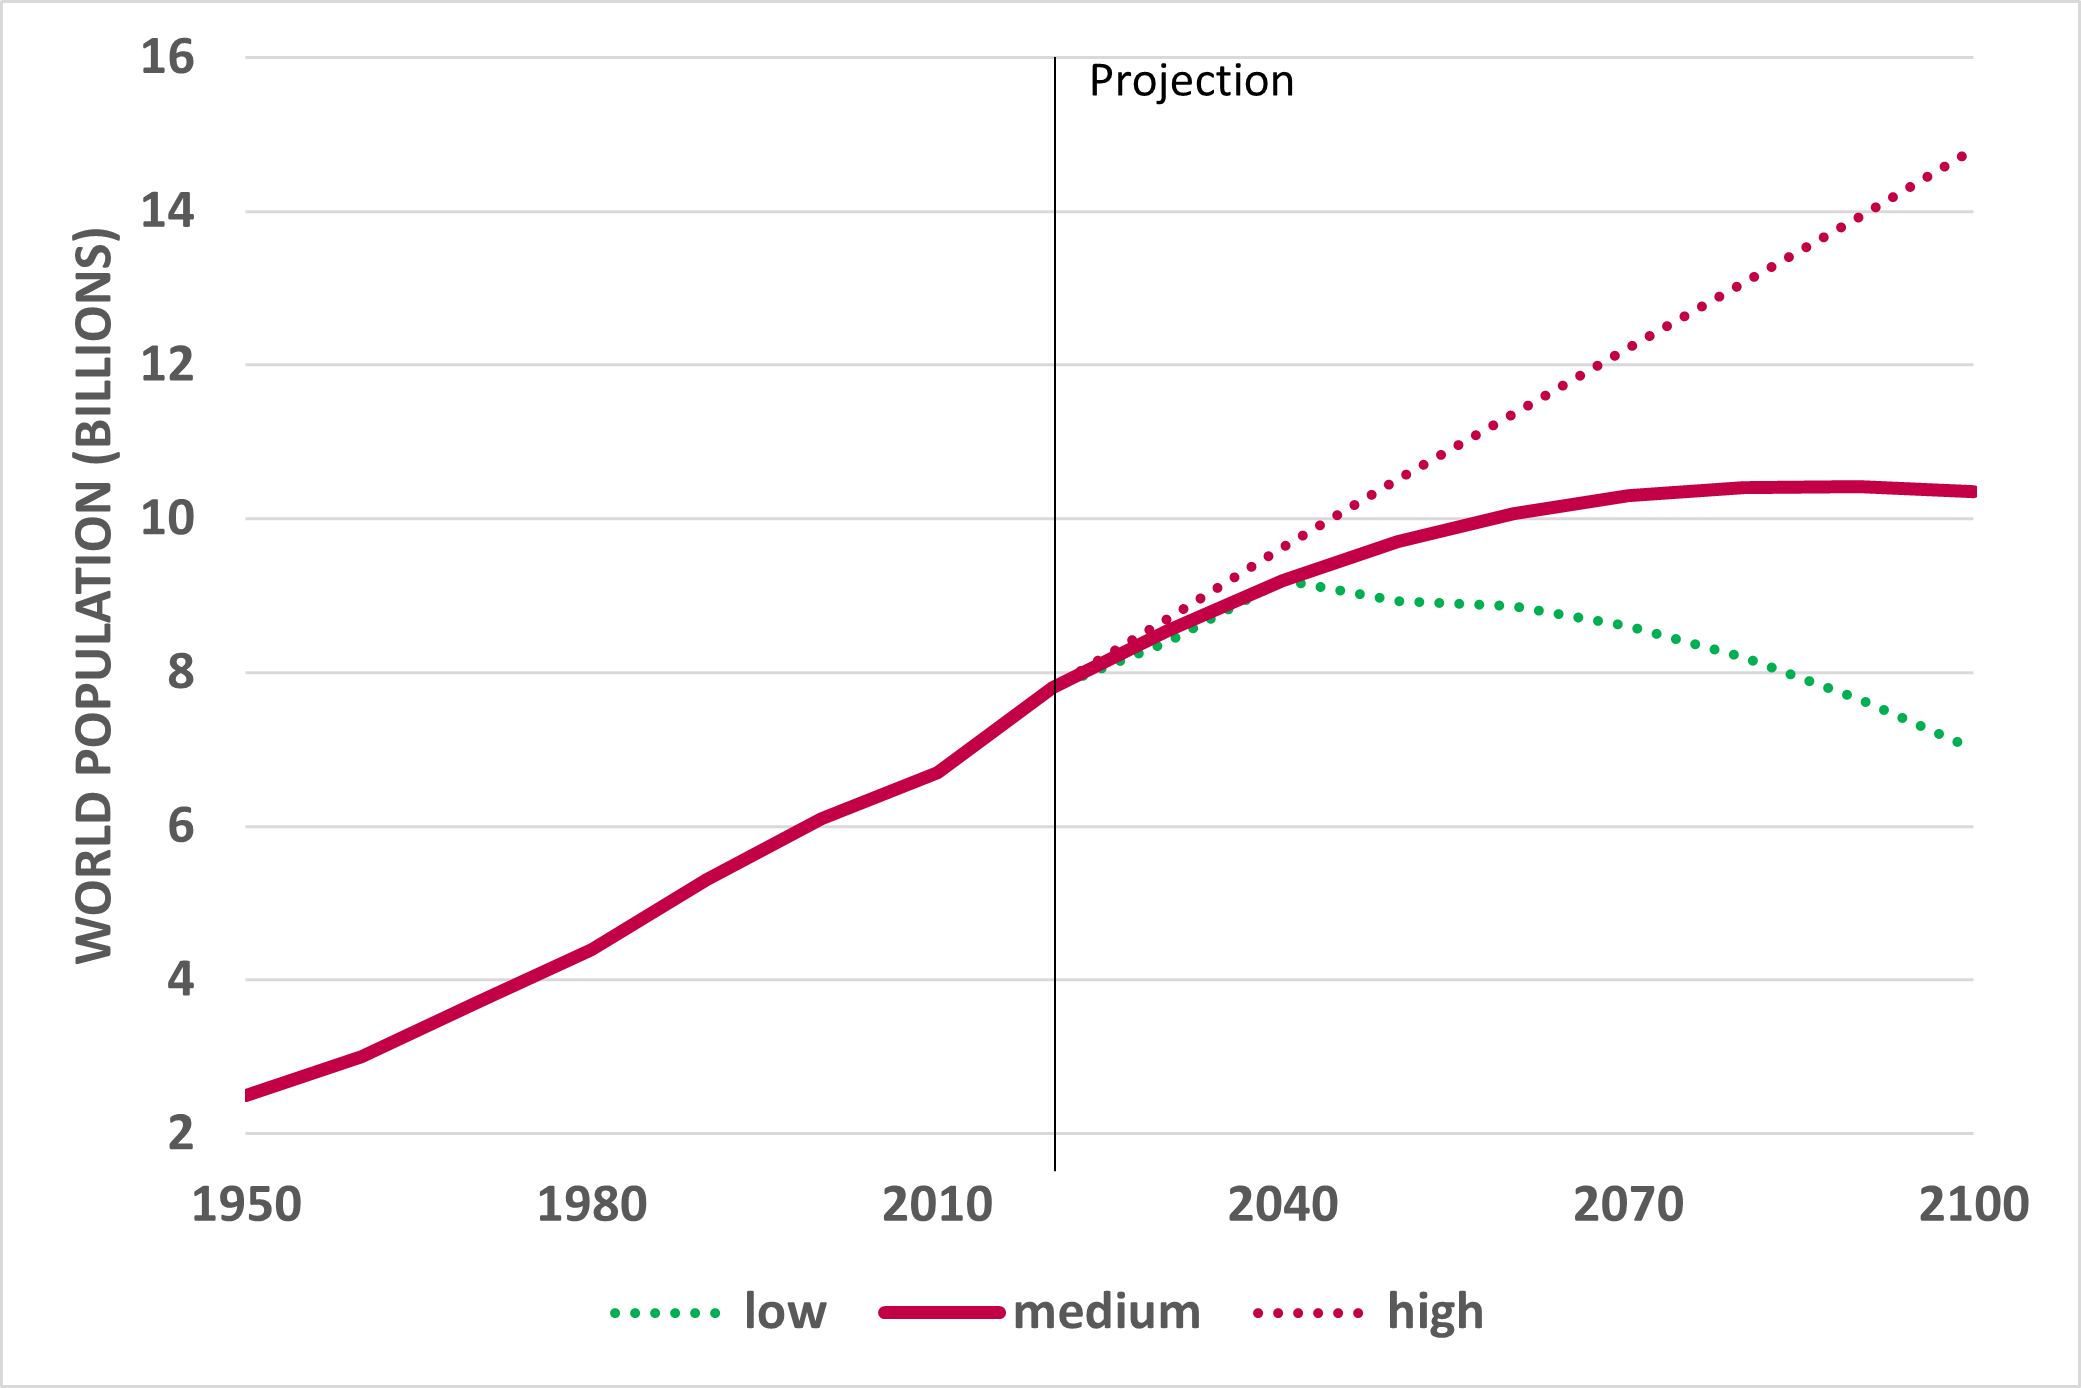 prévisions de croissance démographique jusqu'en 2100